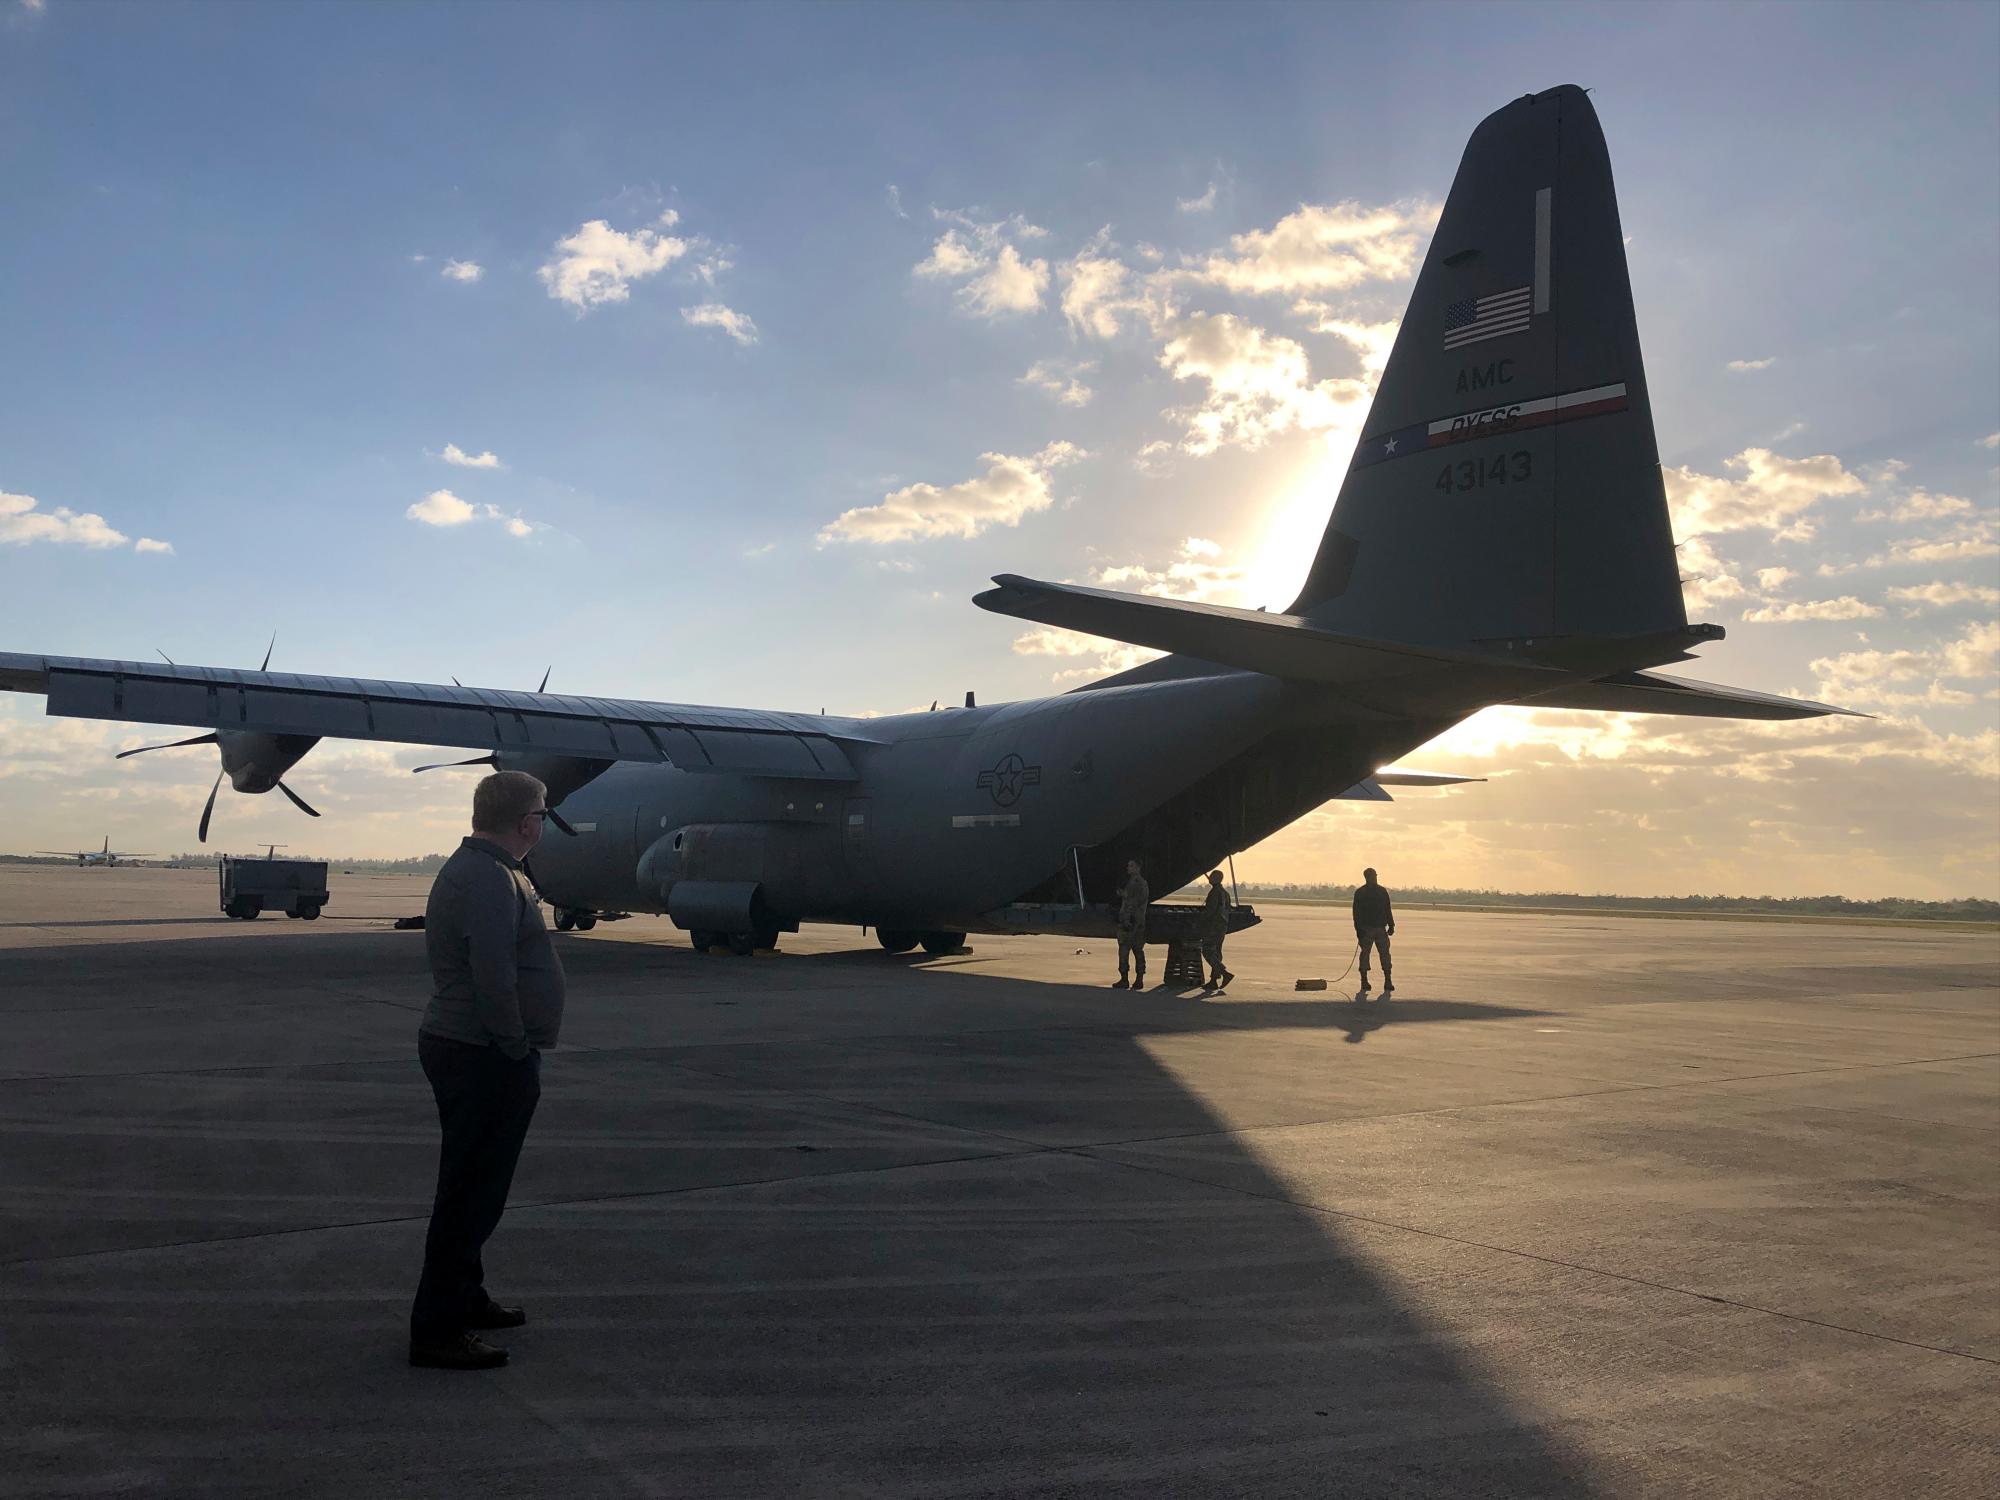 Un avión militar de los E.E.U.U., un C-130 espera la carga en la base de la reserva aérea de Homestead, en el sur de la Florida. El avión, llamado “The Spectacle” voló cientos de cajas de ayuda humanitaria destinadas a ayudar a la gente venezolana, a Cúcuta, Colombia. Fue el séptimo vuelo militar de los Estados Unidos con ayuda humanitaria para los venezolanos.